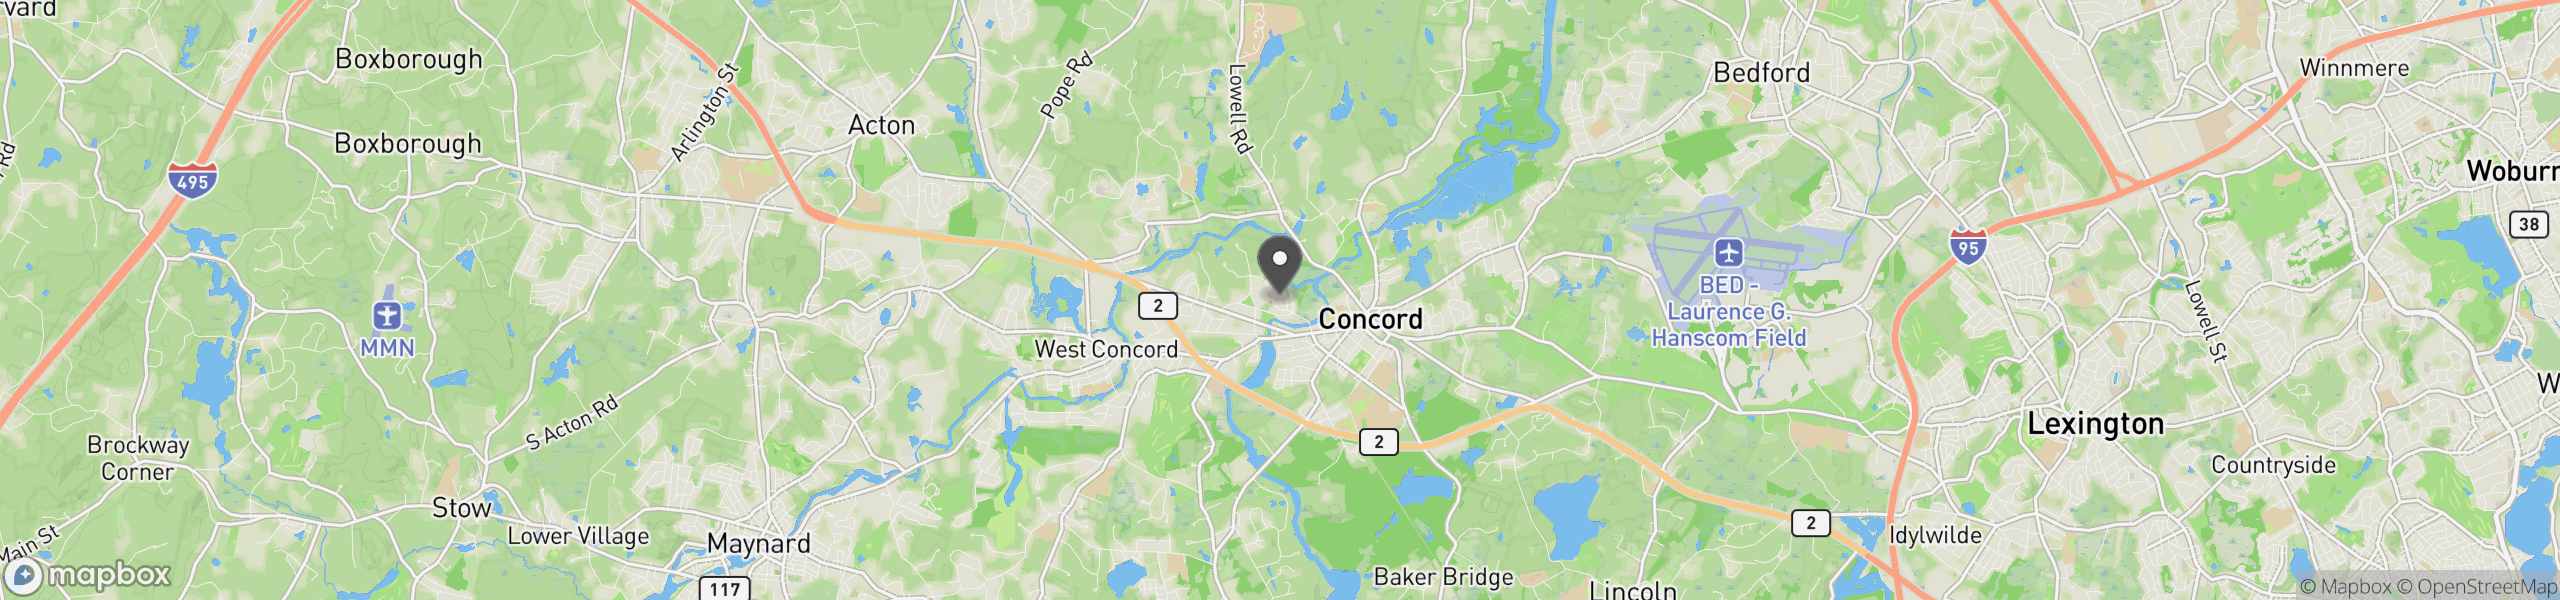 Concord, MA 01742